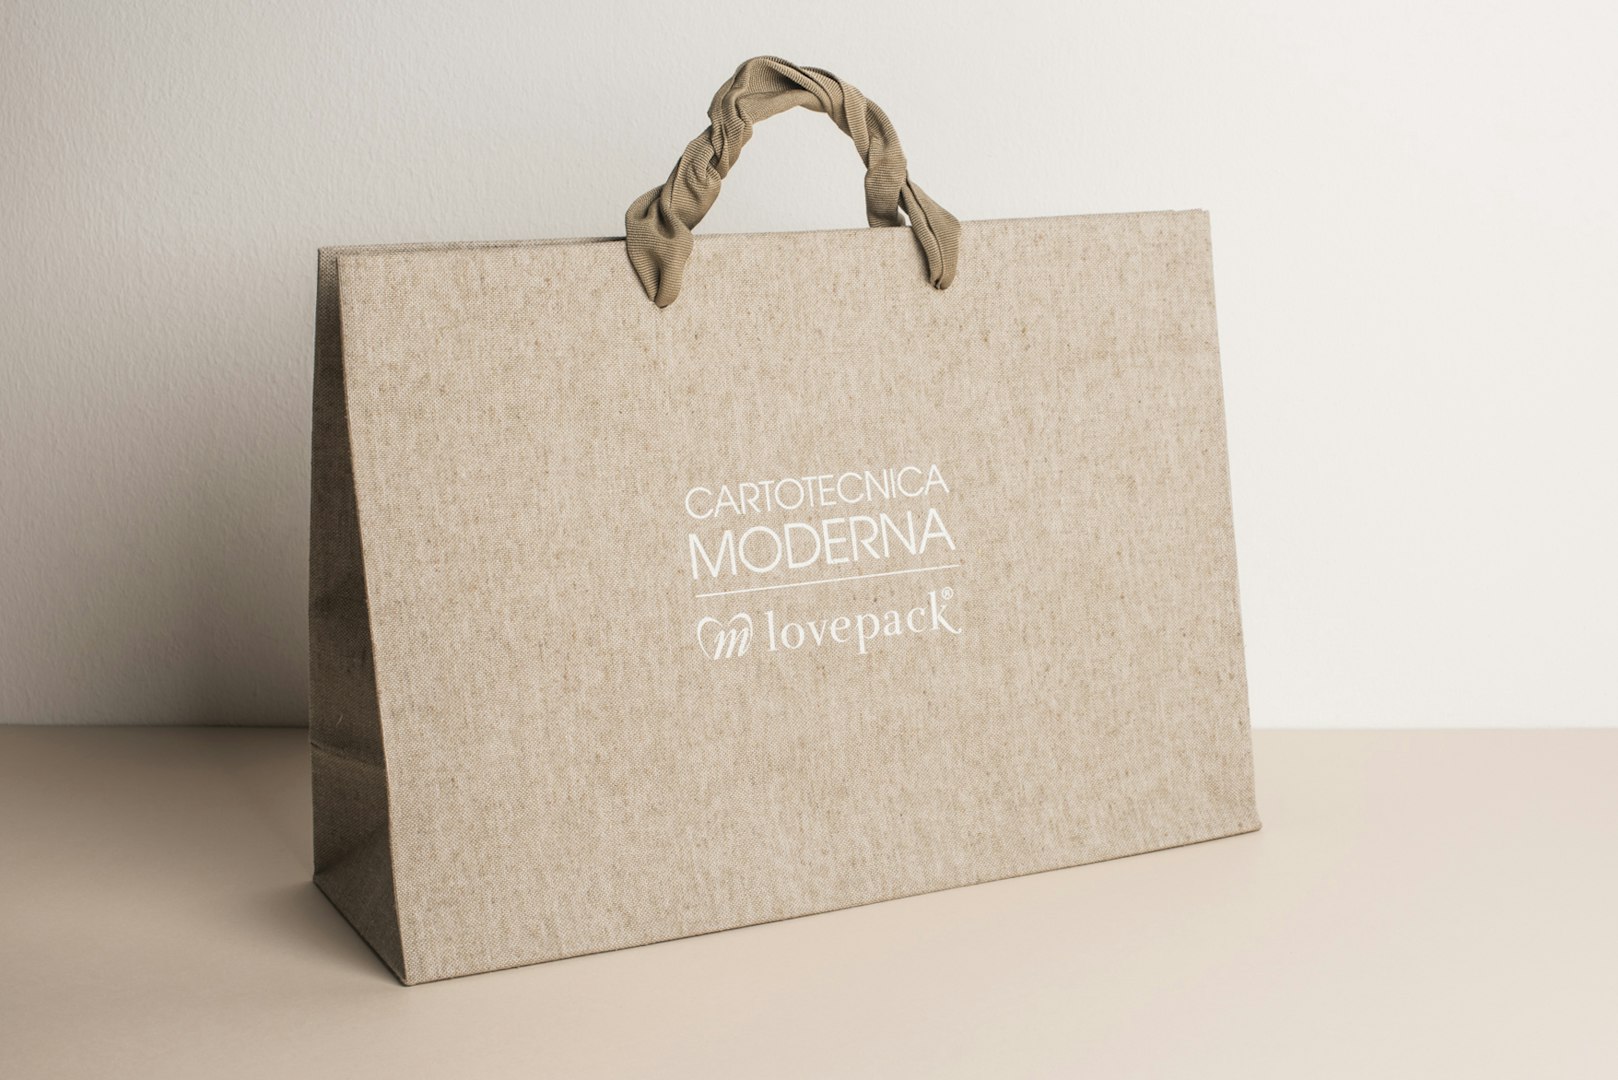 CM Cartotecnica Moderna produces a wide range of shopping bag